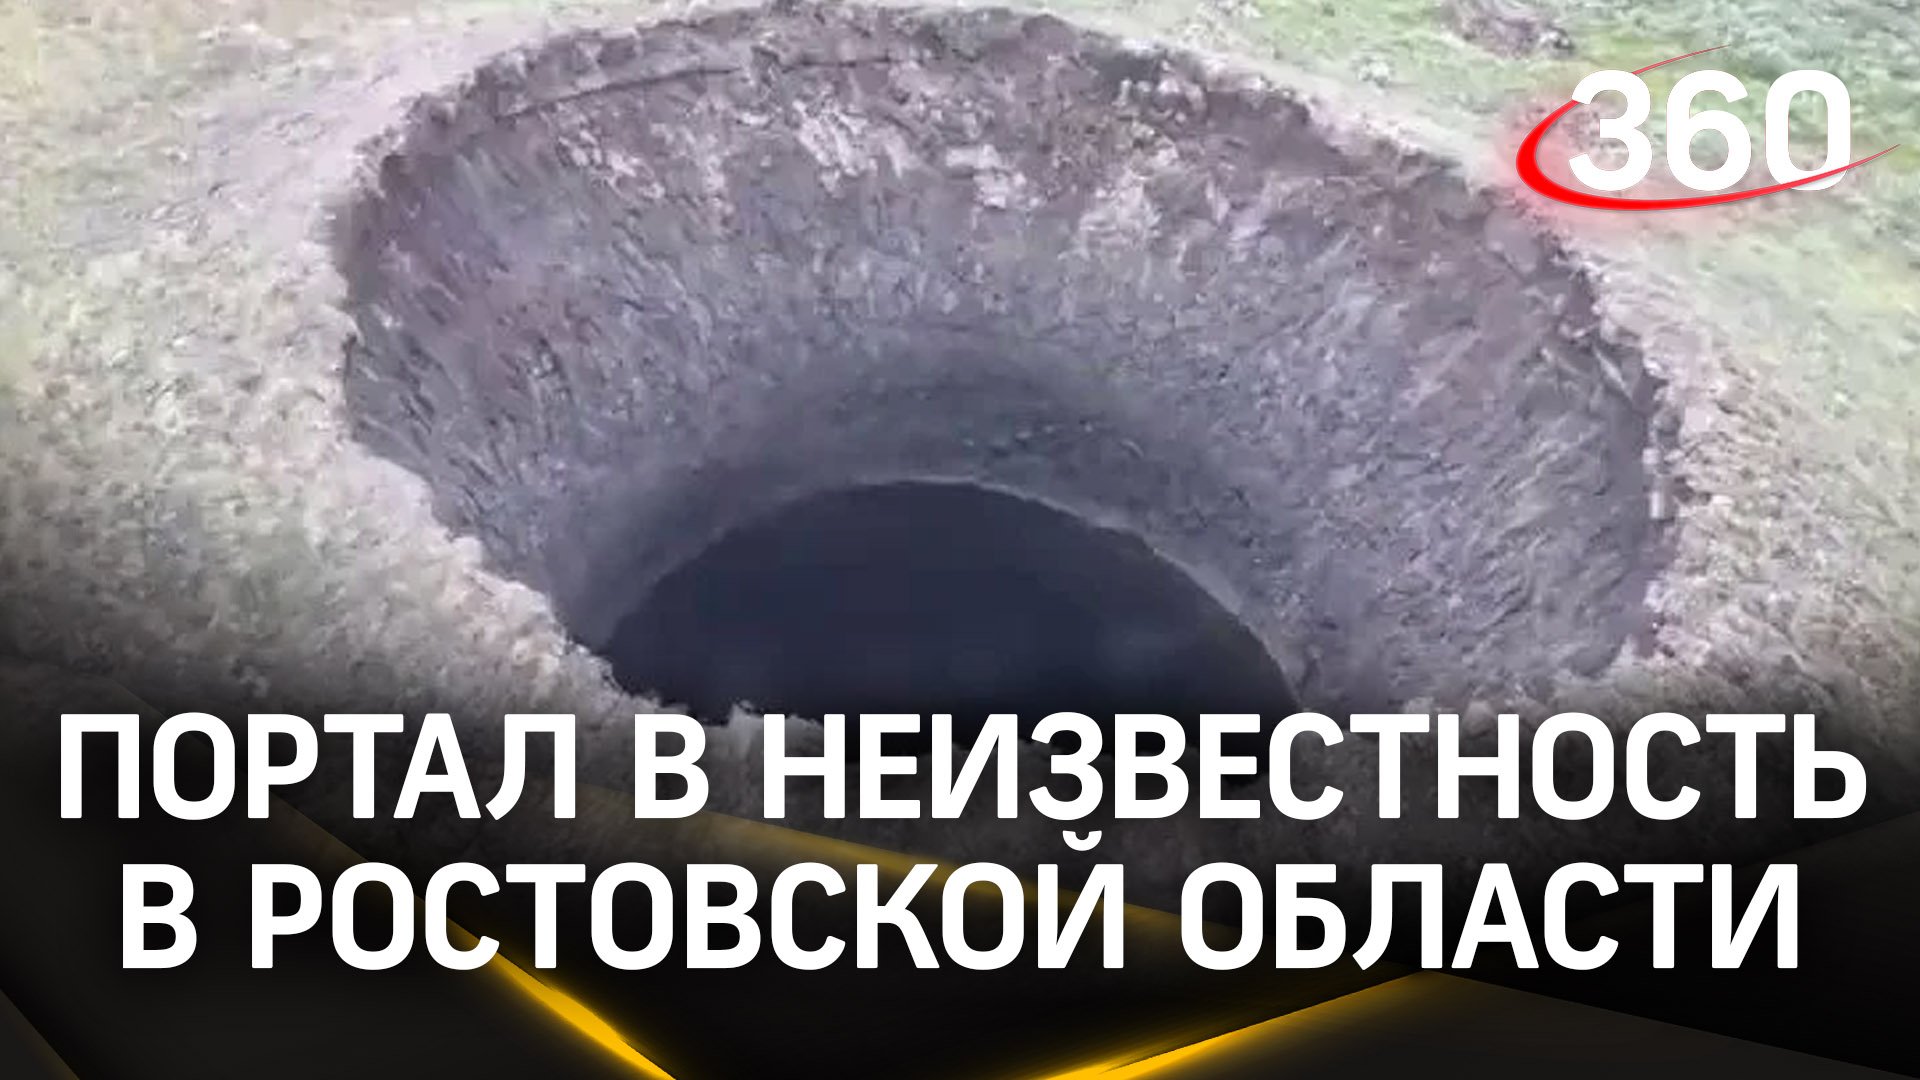 Неизвестый кратер обнаружили на одном из полей сельхозназначения в Ростовской области